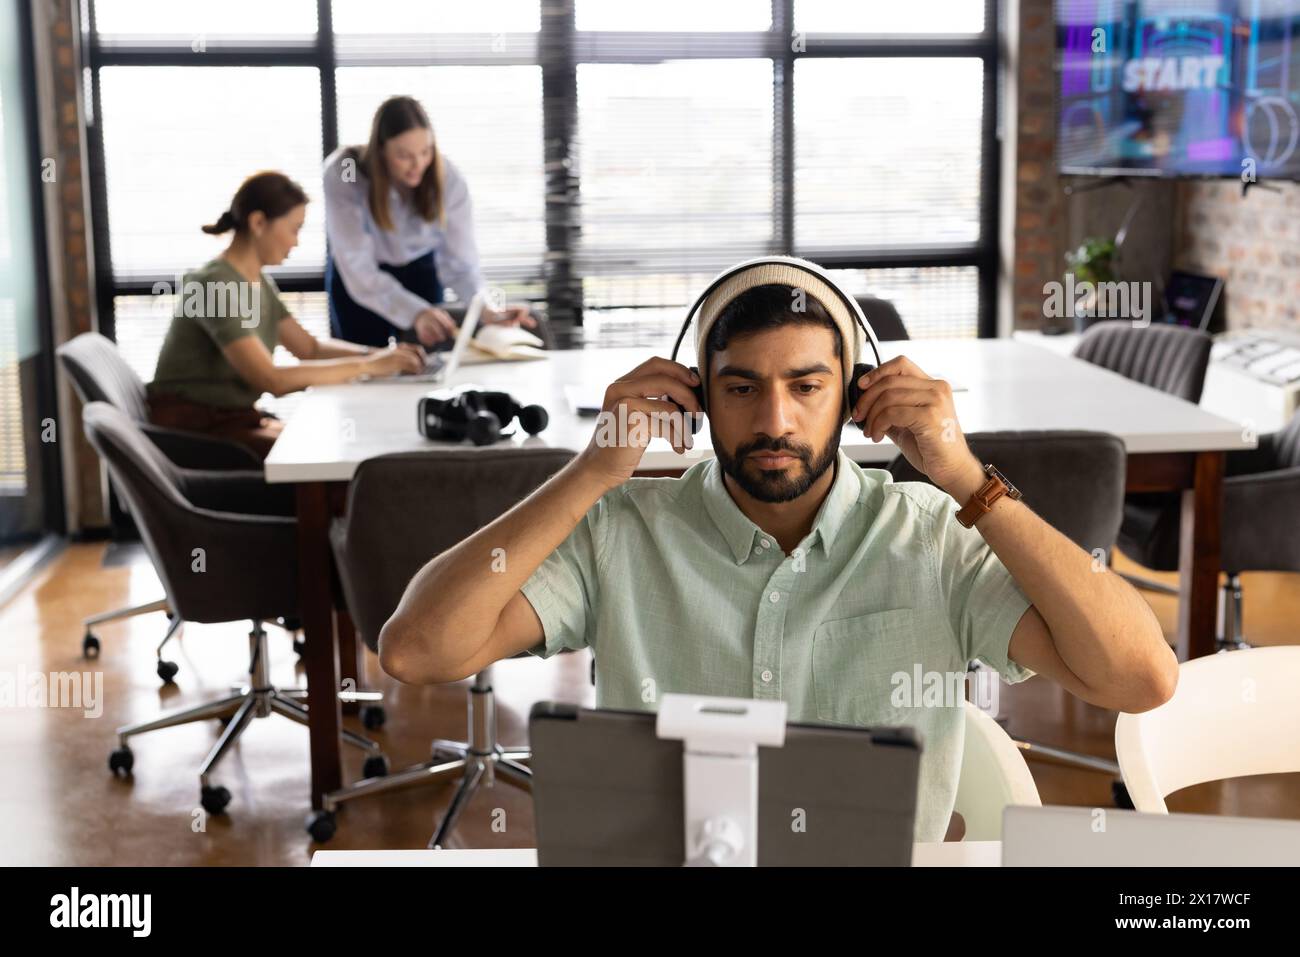 Ein vielseitiges Team arbeitet in einem modernen Geschäftsbüro, wobei ein junger asiatischer Mann sich auf einen Computer konzentriert Stockfoto